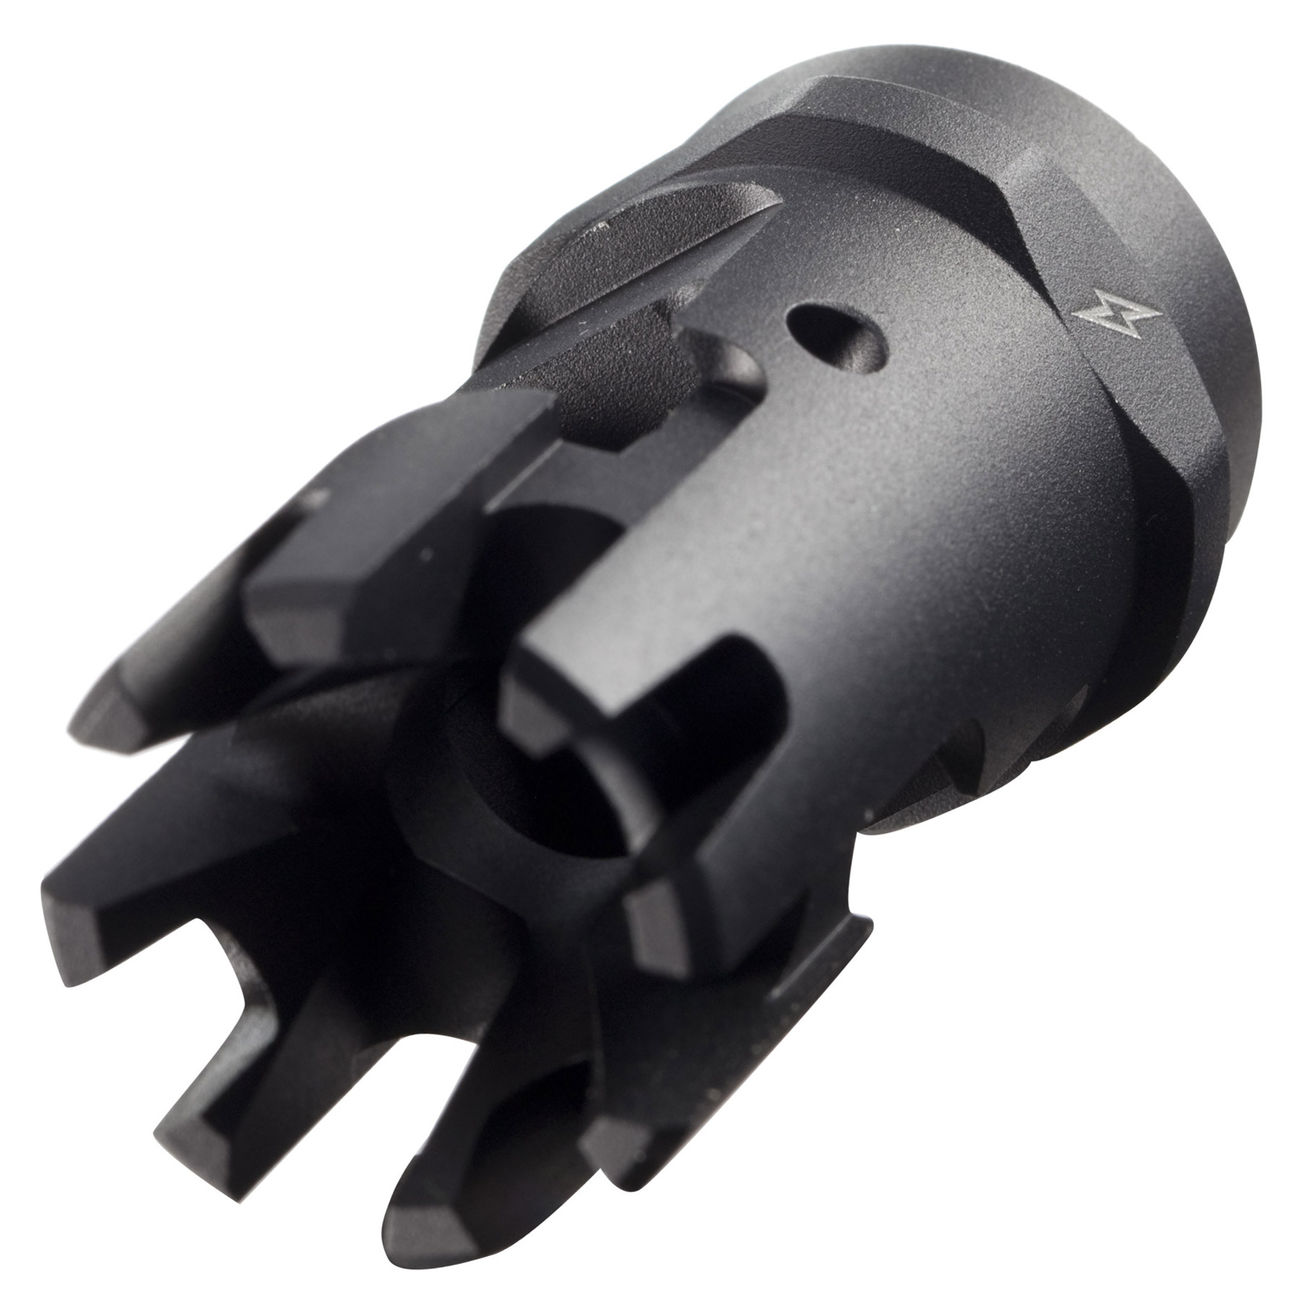 MadBull / Strike Industries Checkmate Compensator schwarz 14mm-